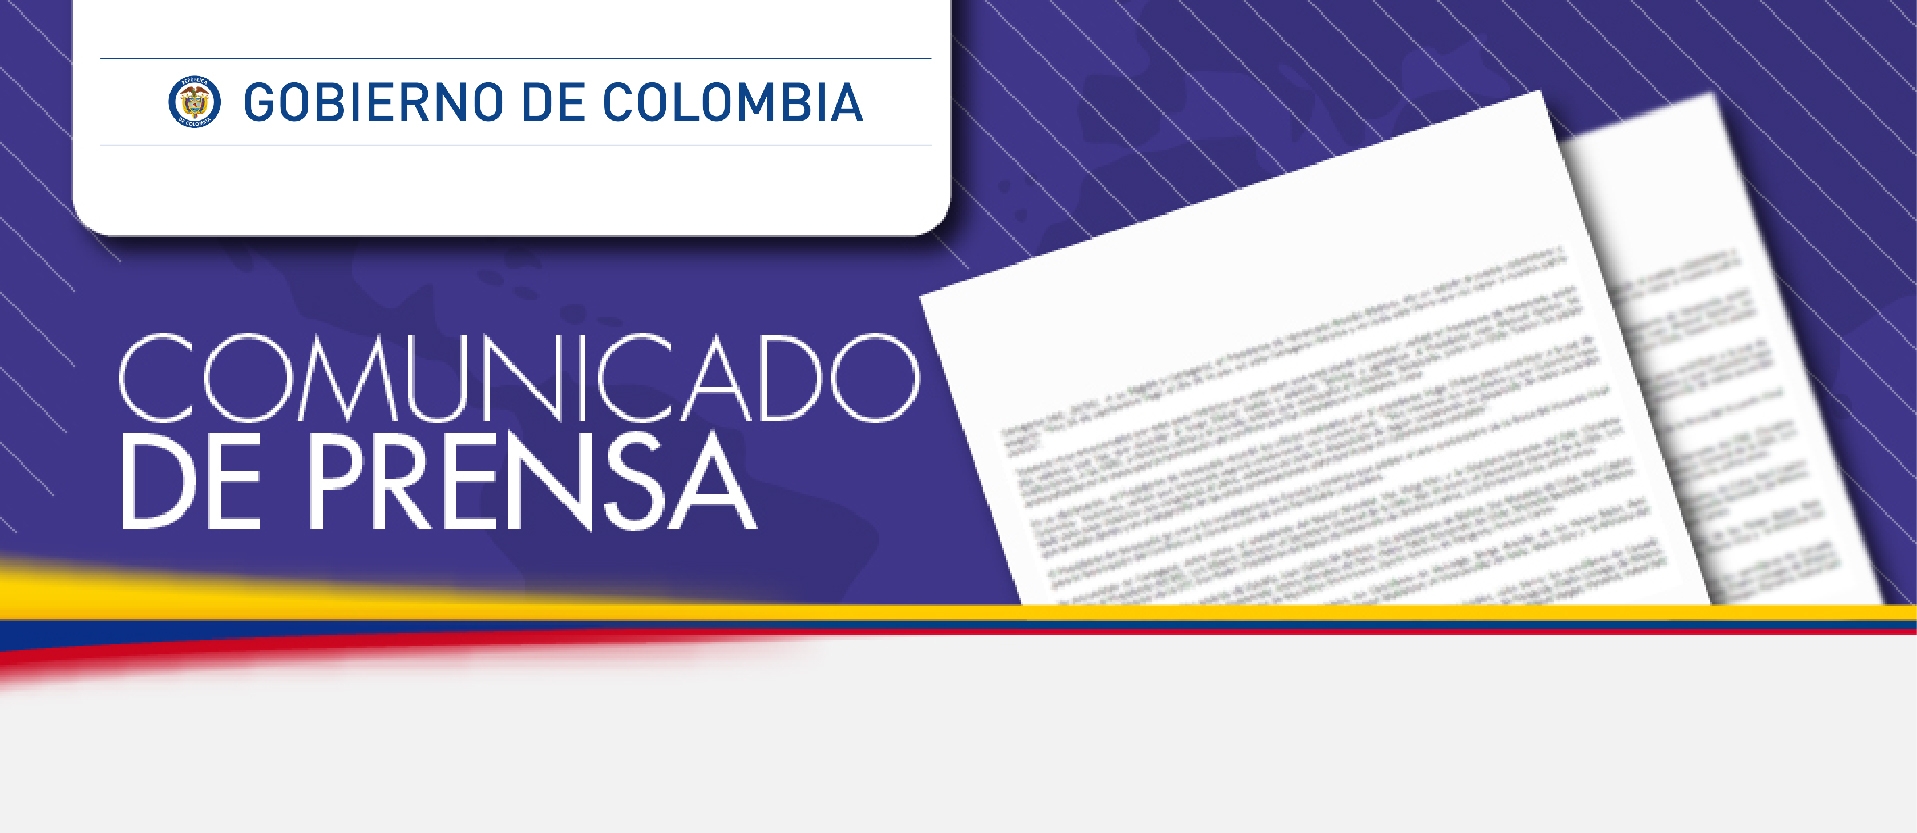 Comunicado de prensa del Gobierno colombiano